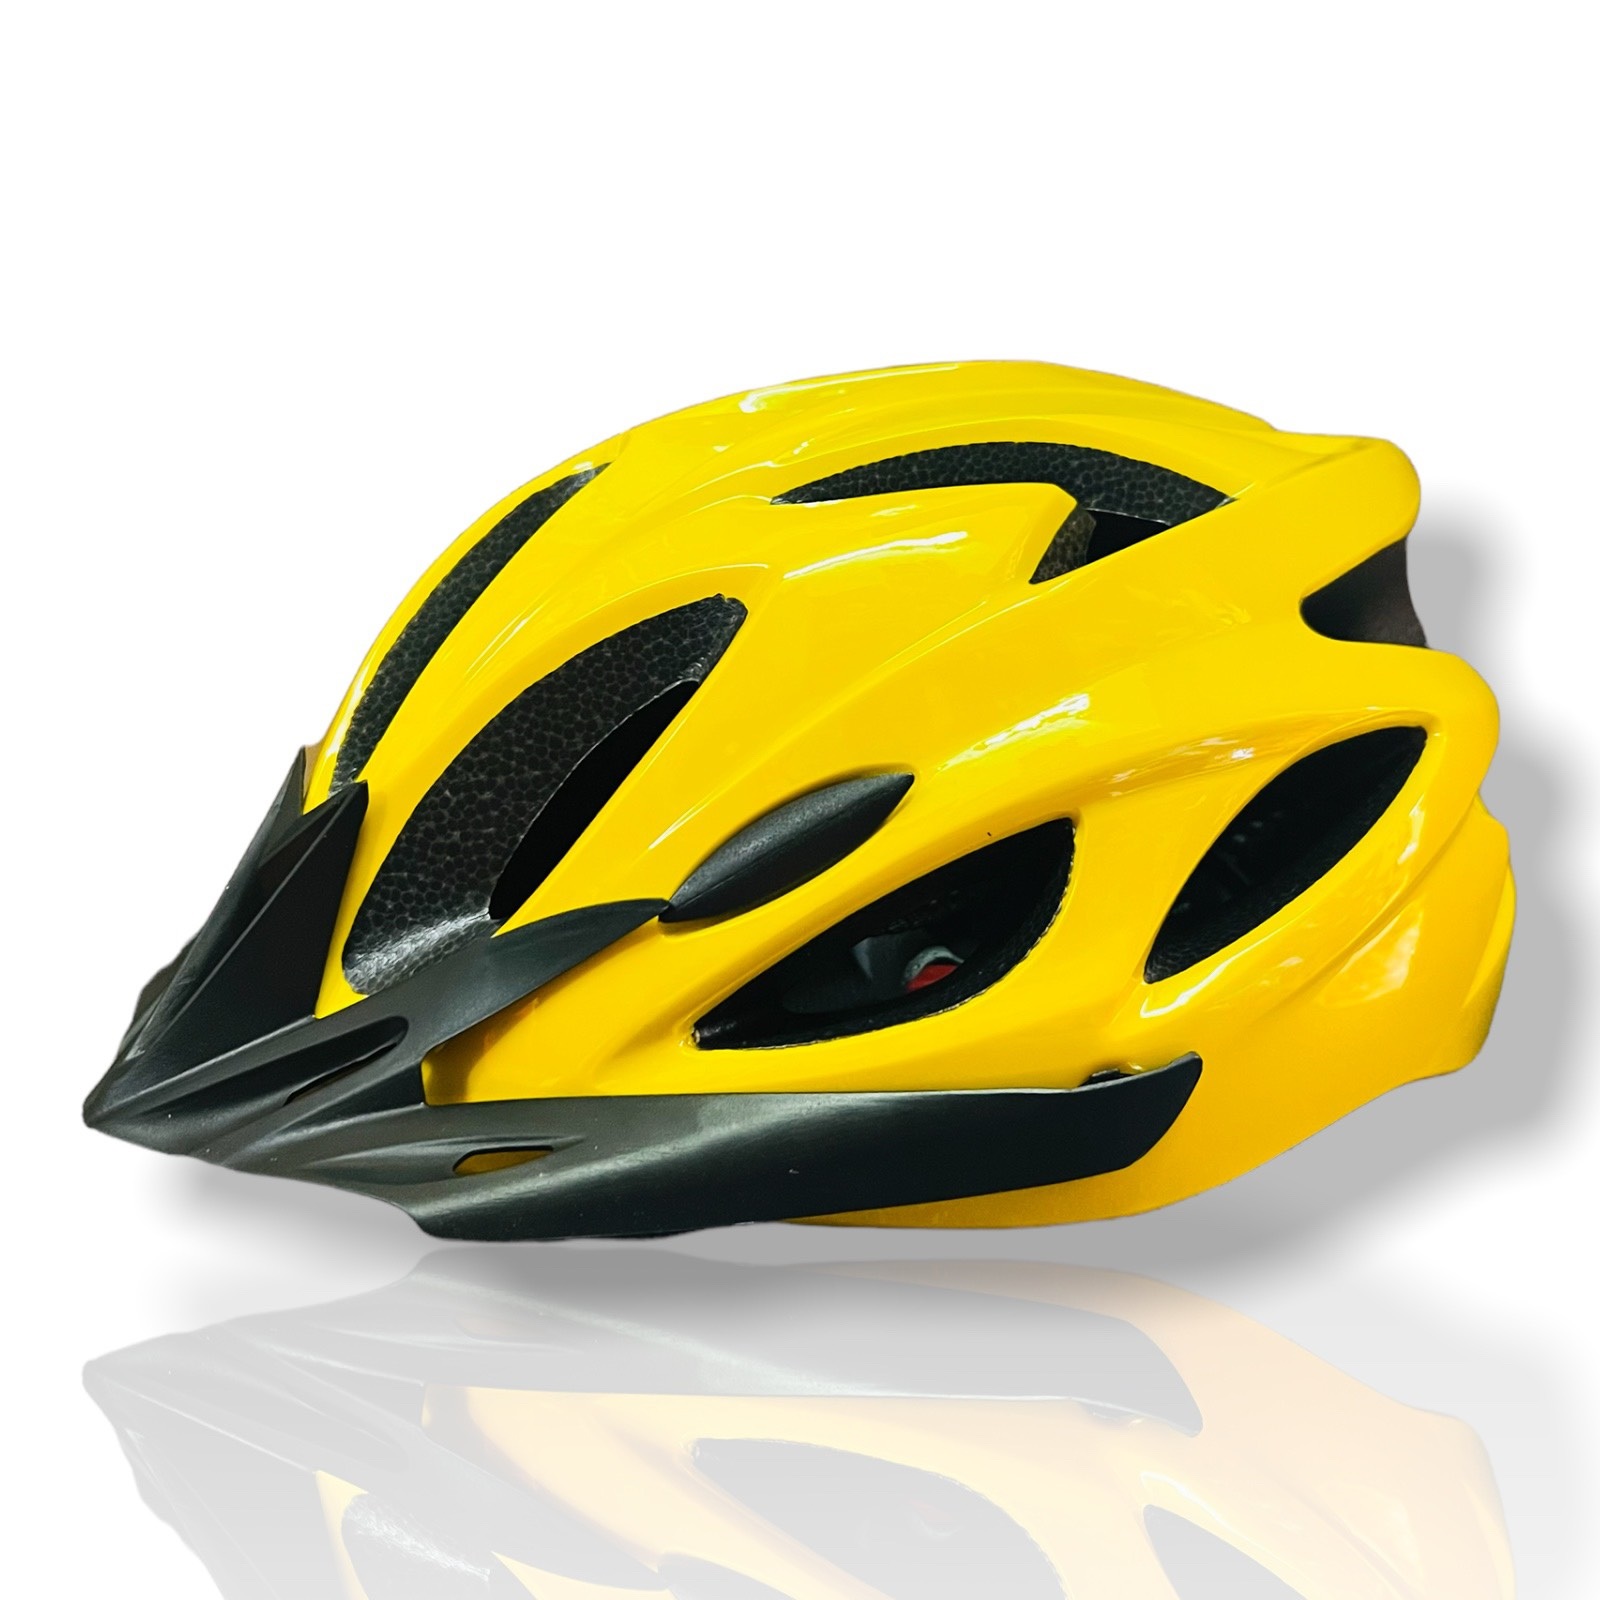 Nón bảo hiểm xe đạp thể thao D13 nhiều màu sắc lựa chọn